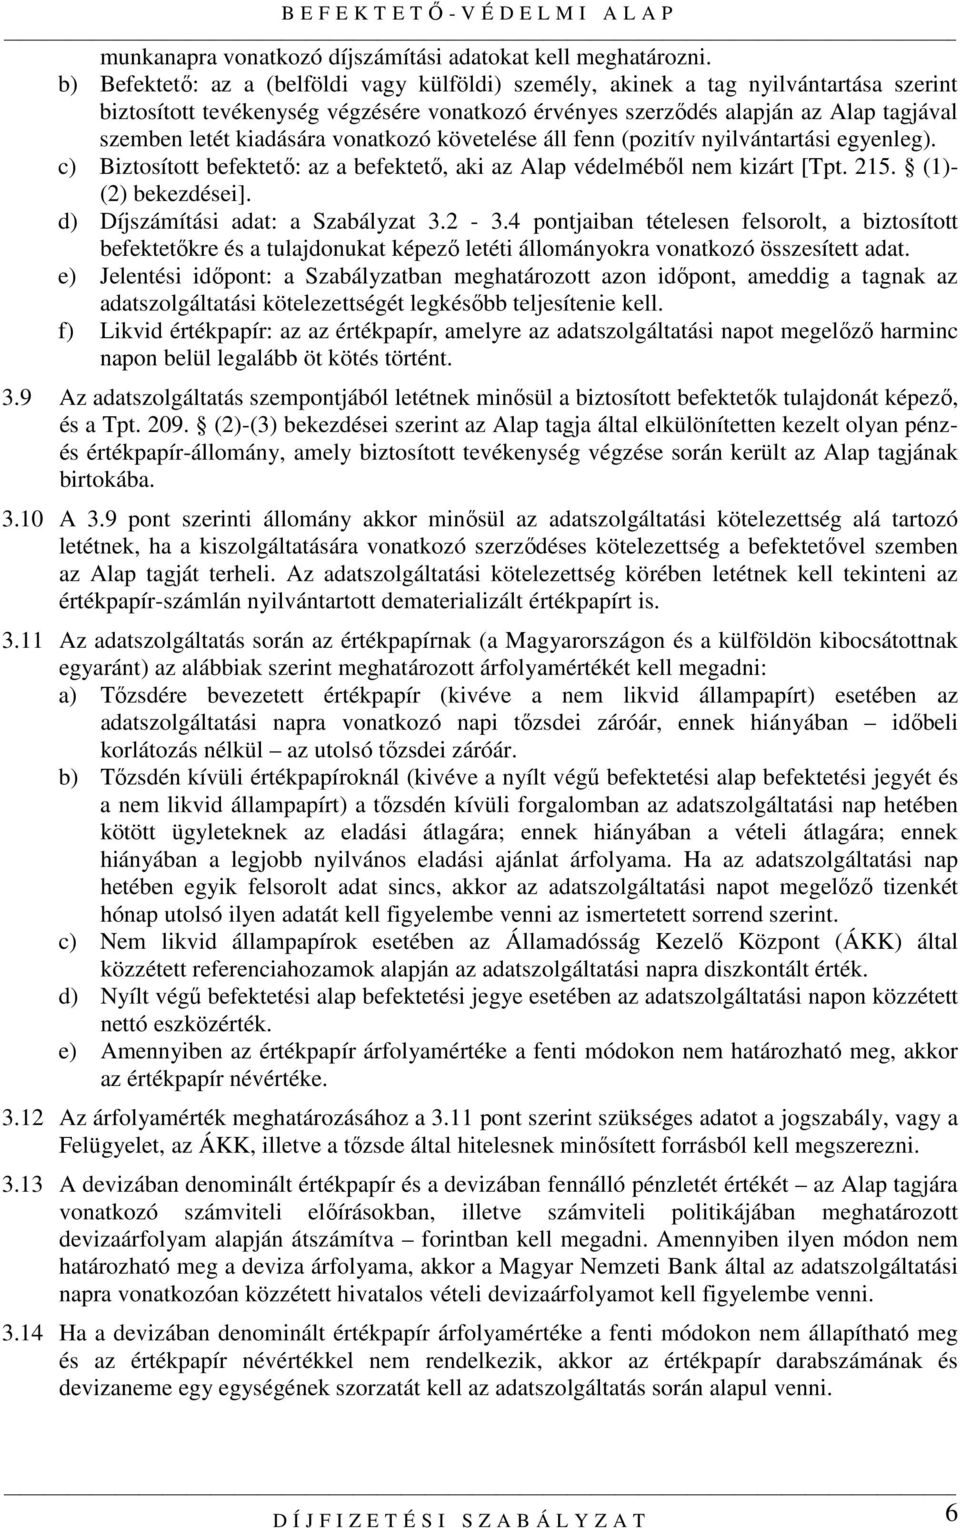 kiadására vonatkozó követelése áll fenn (pozitív nyilvántartási egyenleg). c) Biztosított befektetı: az a befektetı, aki az Alap védelmébıl nem kizárt [Tpt. 215. (1)- (2) bekezdései].